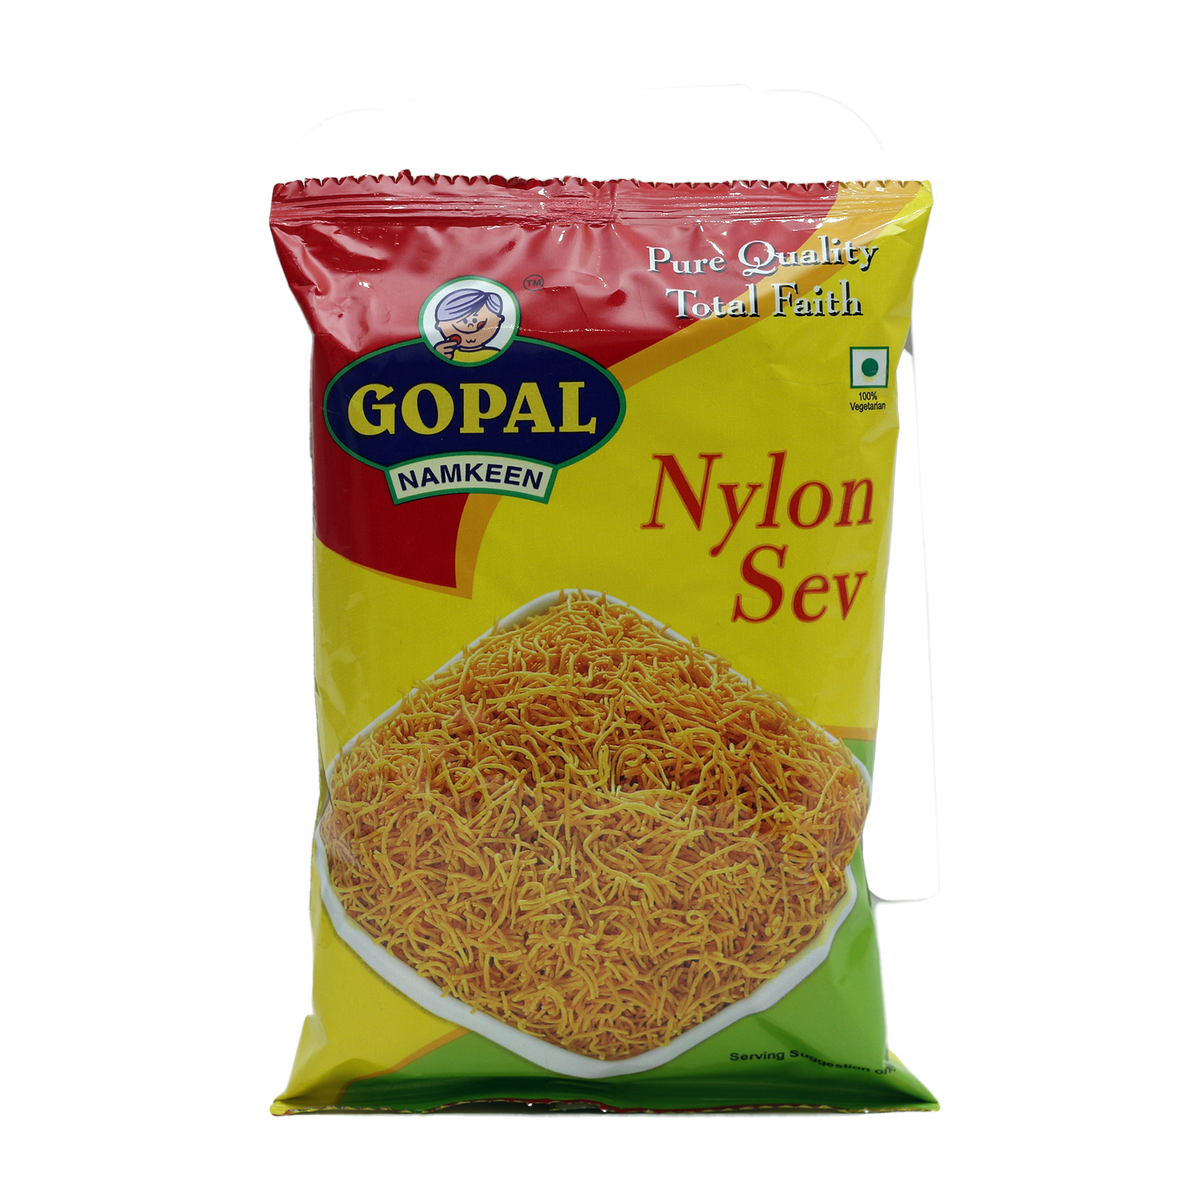 Gopal Nylon Sev 85g